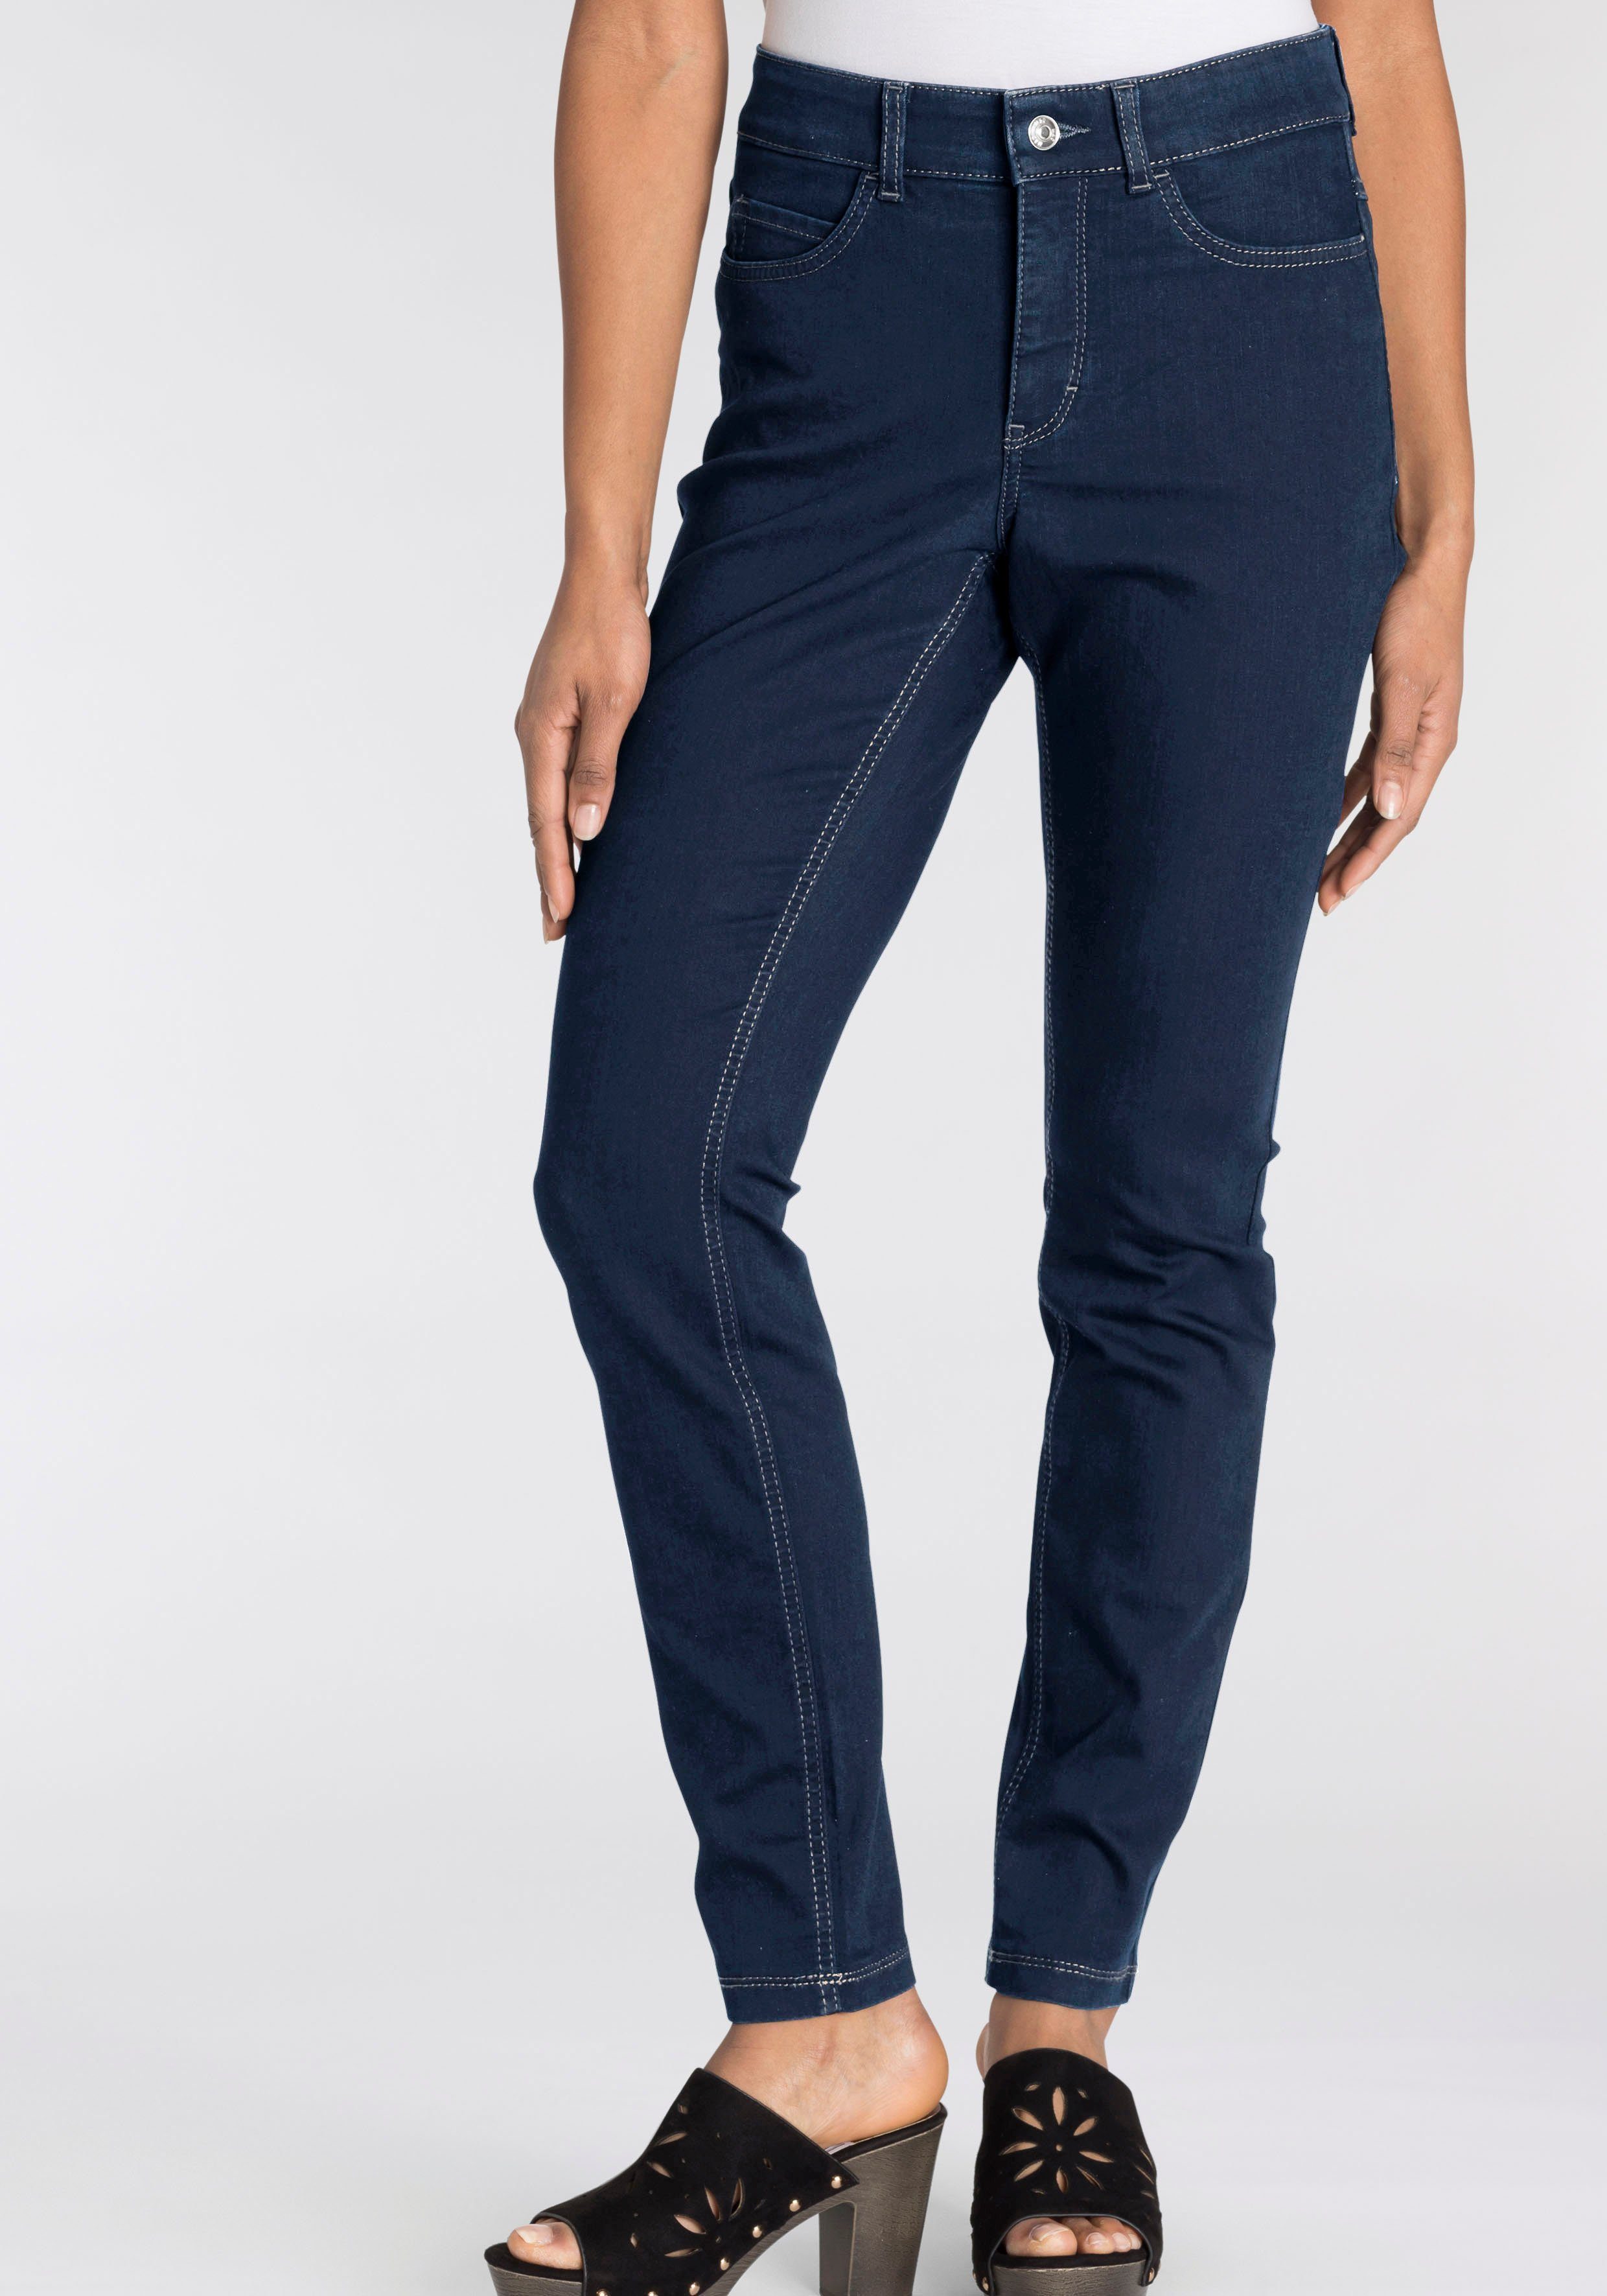 basic wash dark bequem Skinny-fit-Jeans blue Hiperstretch-Skinny ganzen new Qualität Power-Stretch Tag sitzt den MAC